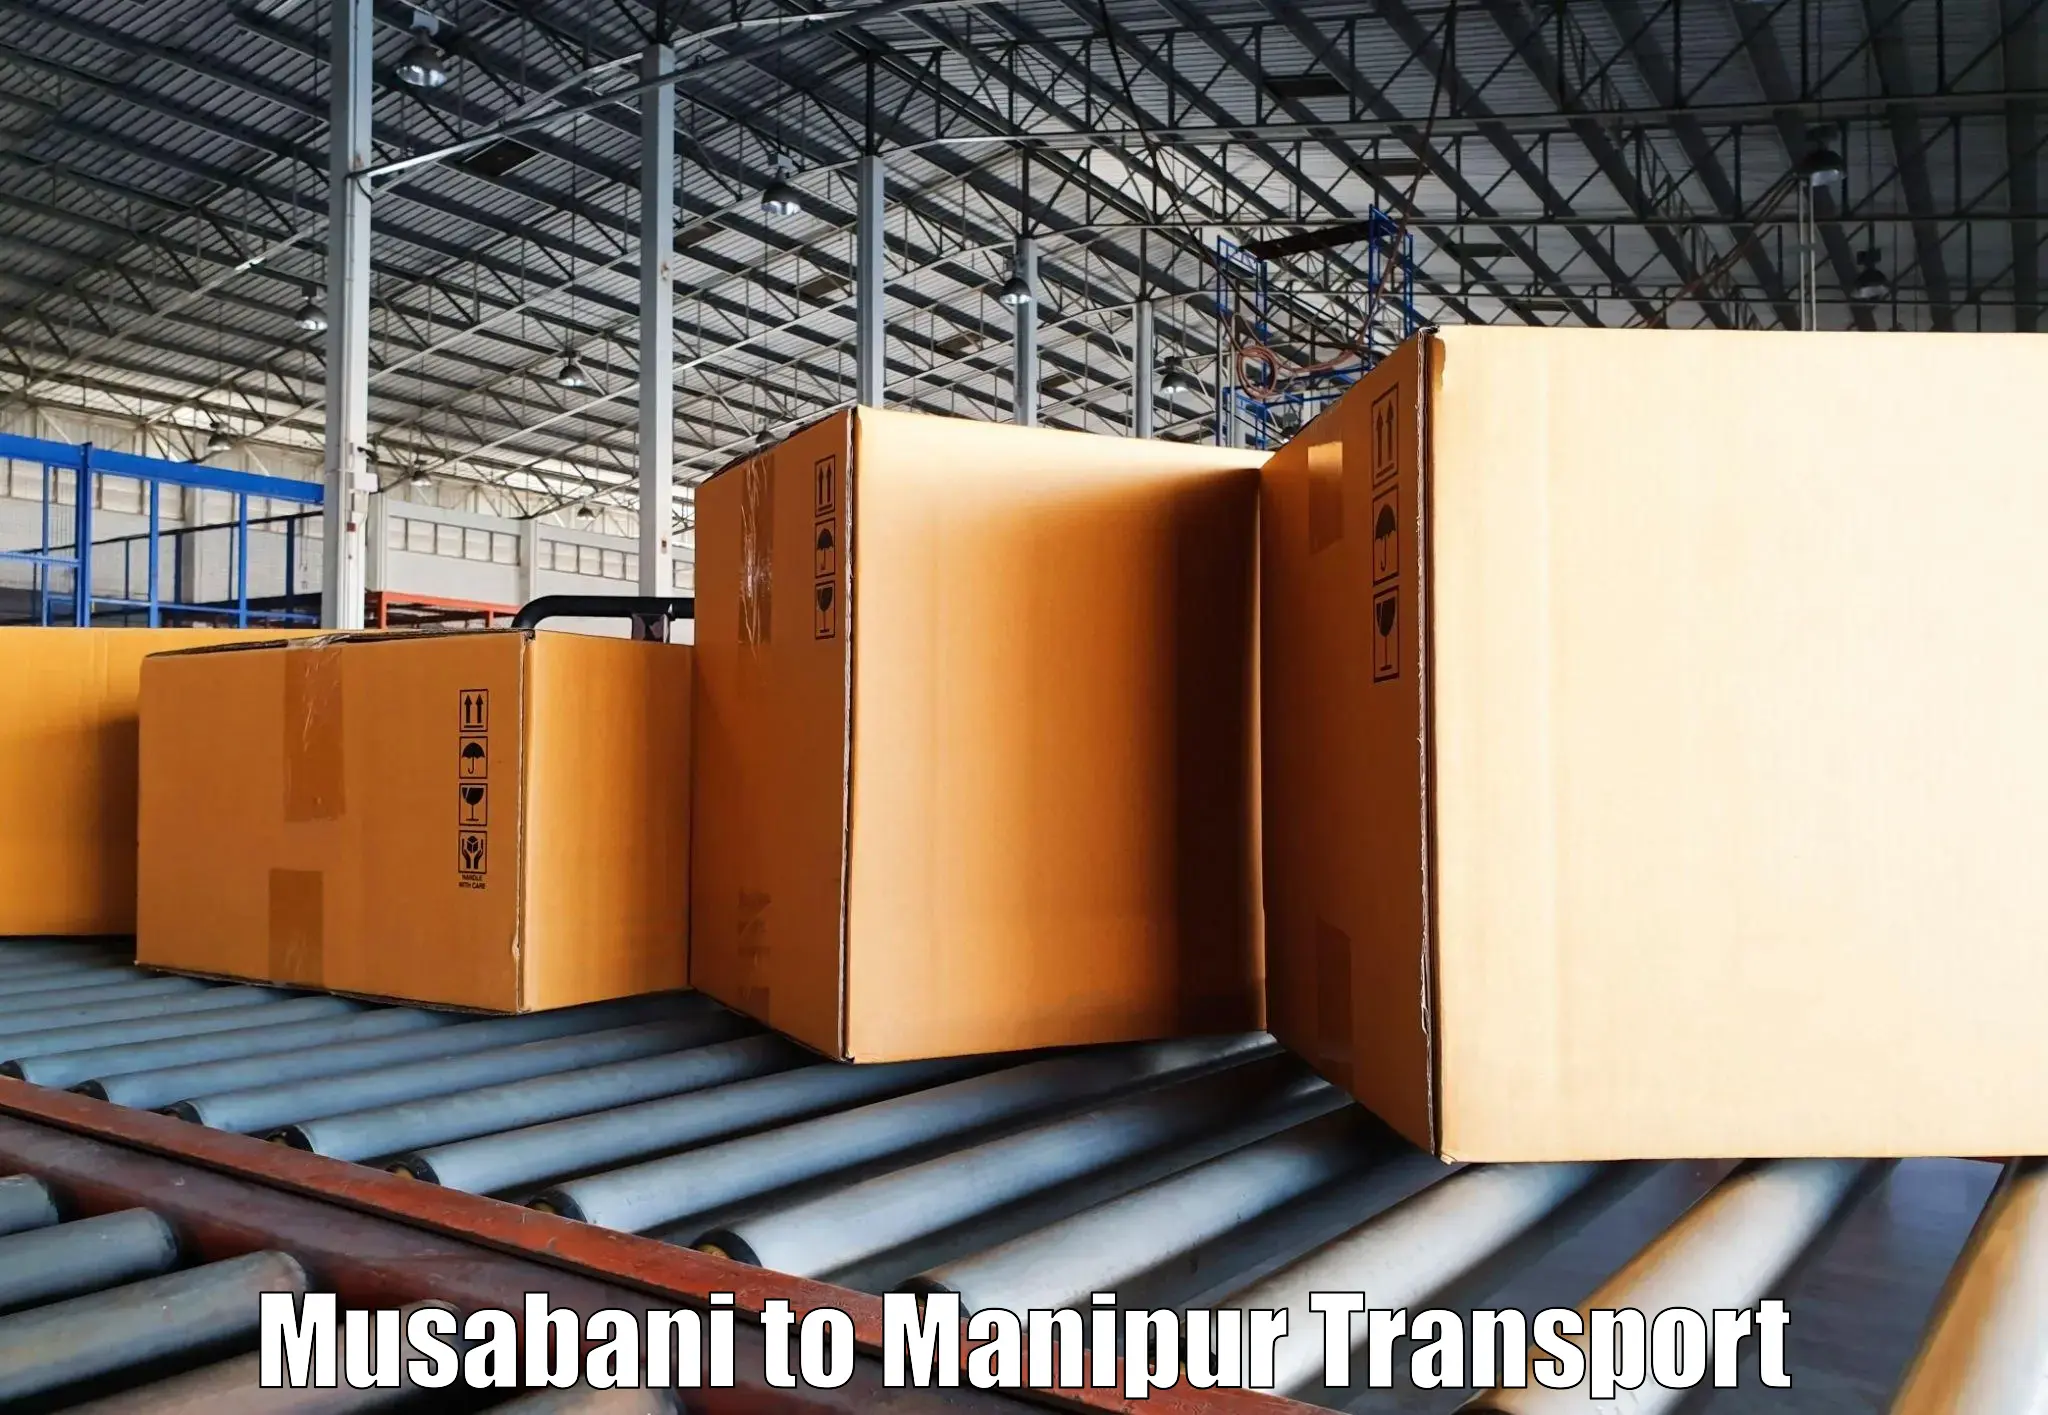 Transport in sharing Musabani to Manipur